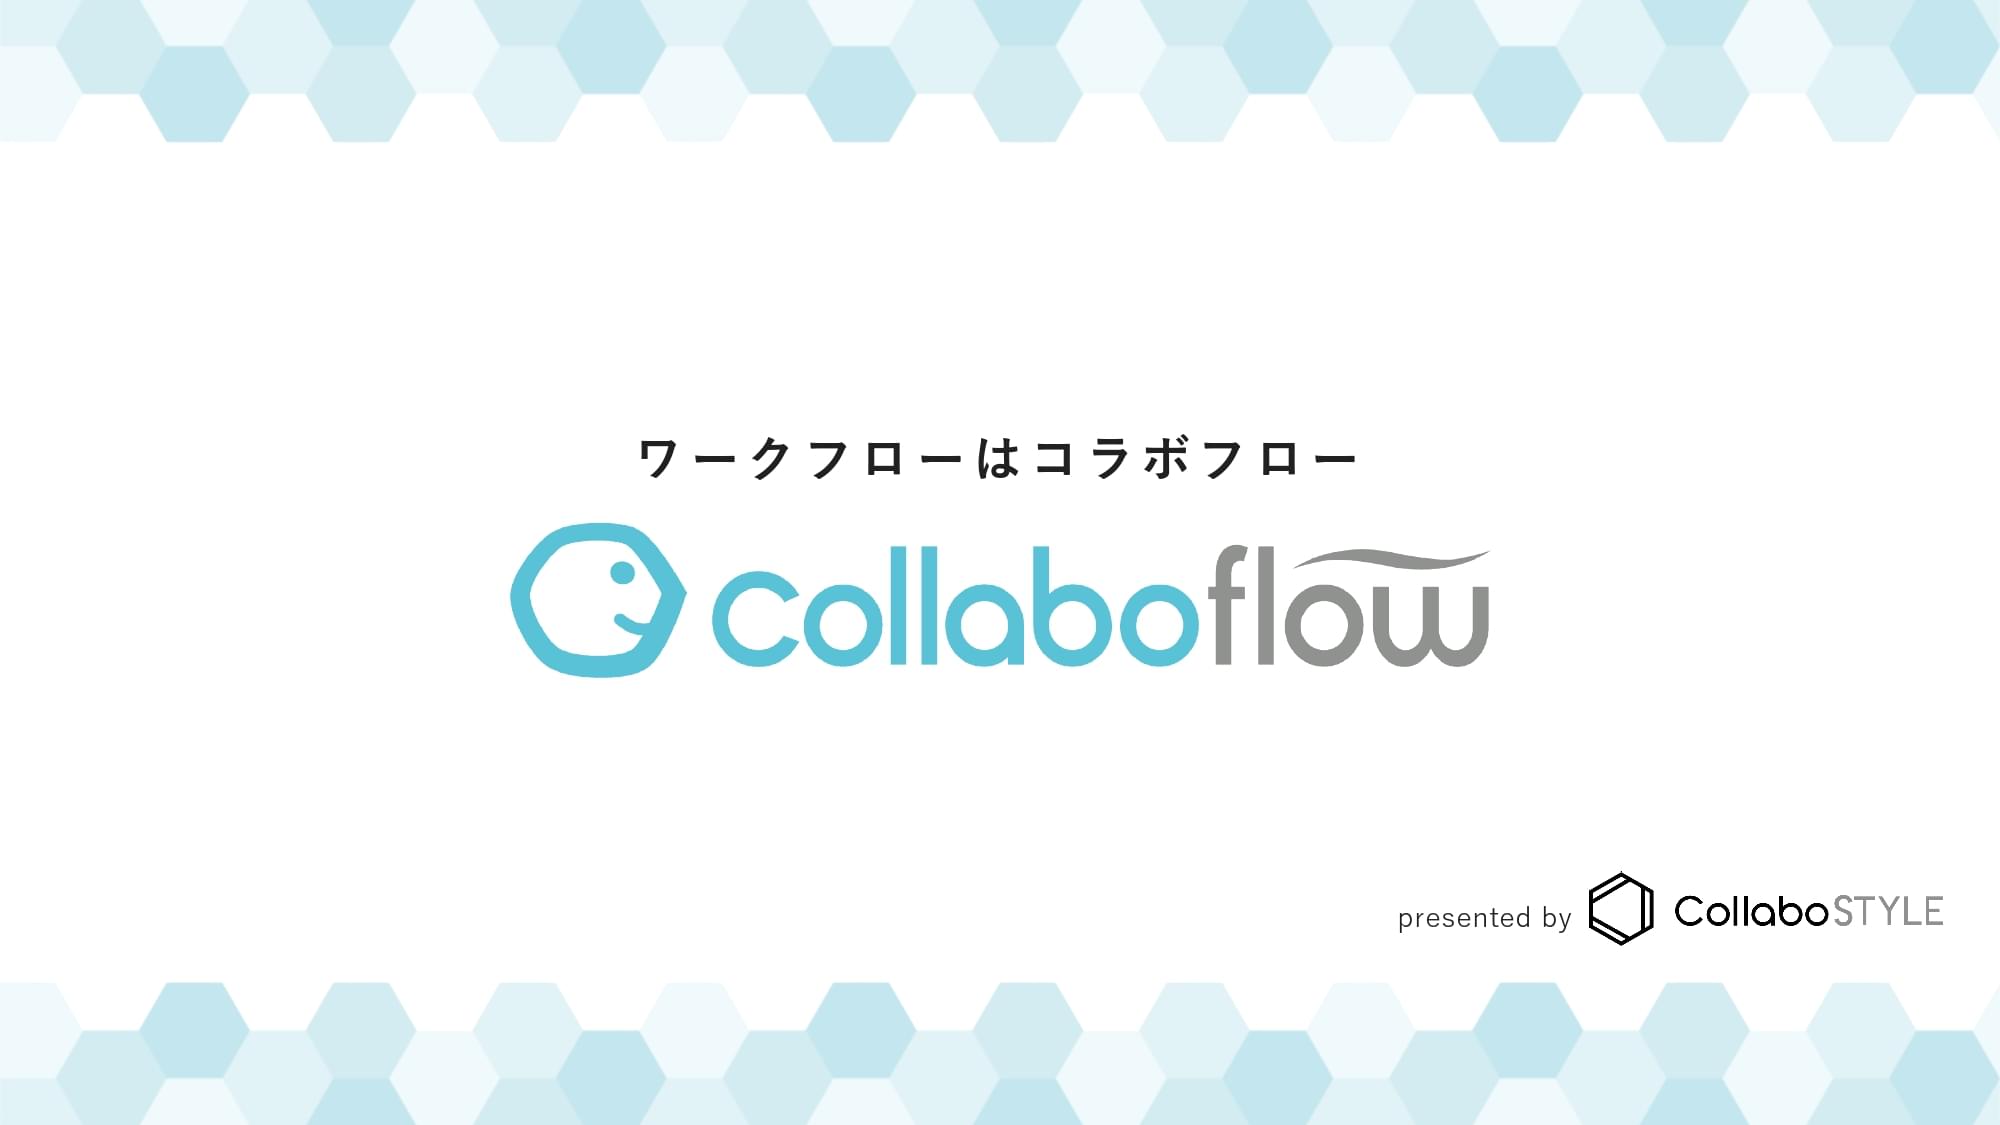 collaboflow